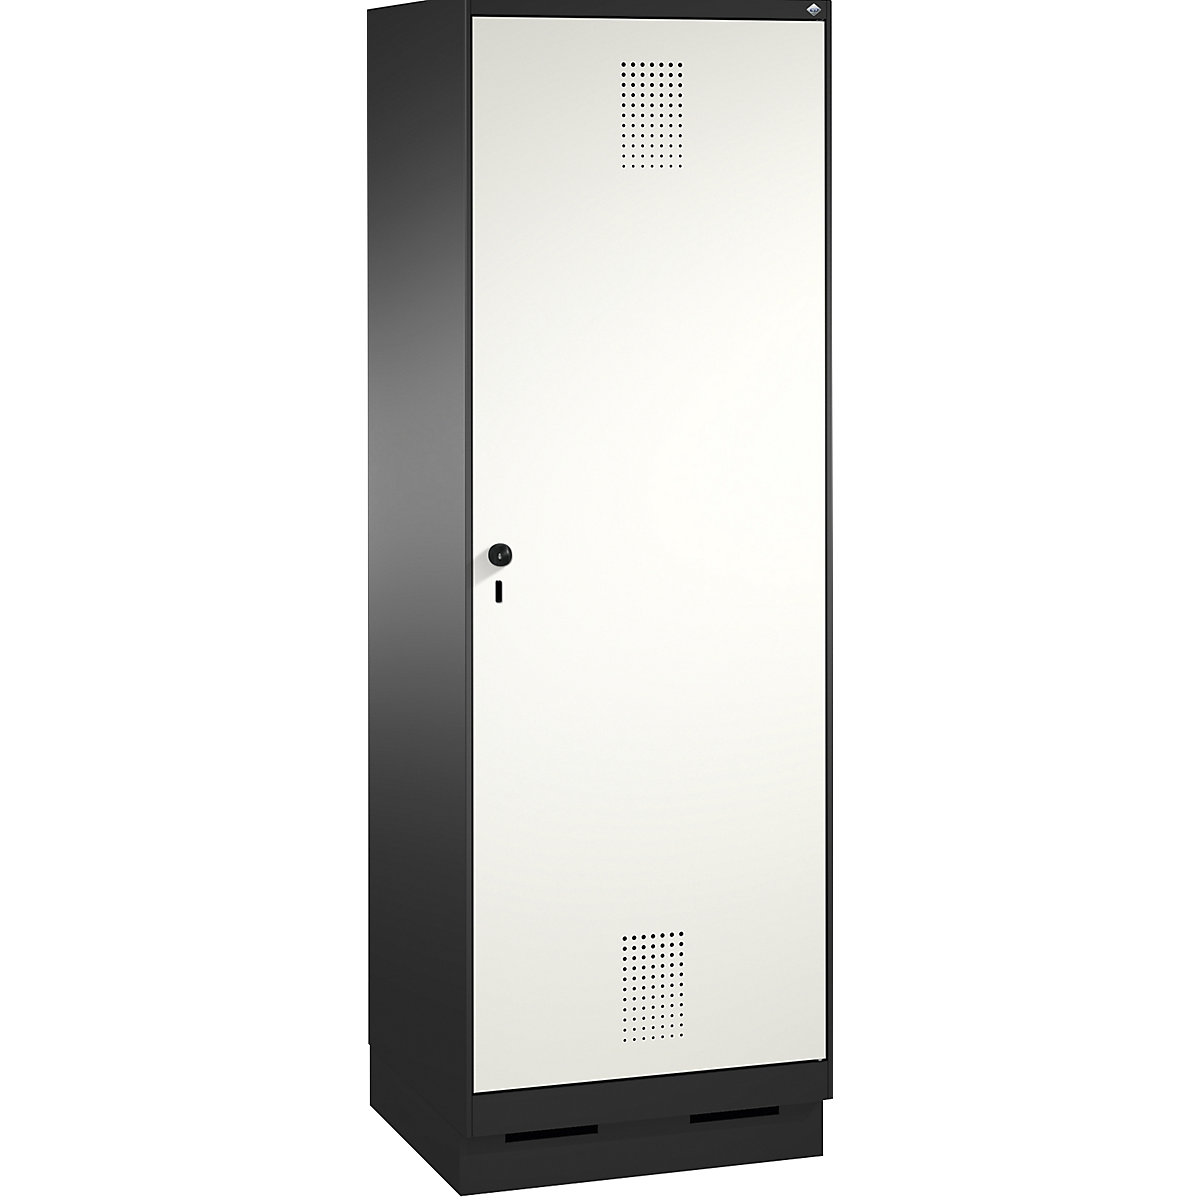 Garderobna omara EVOLO, vrata čez 2 predelka, s podnožjem – C+P, 2 razdelka, 1 vrata, širina razdelka 300 mm, črno sive / prometno bele barve-14